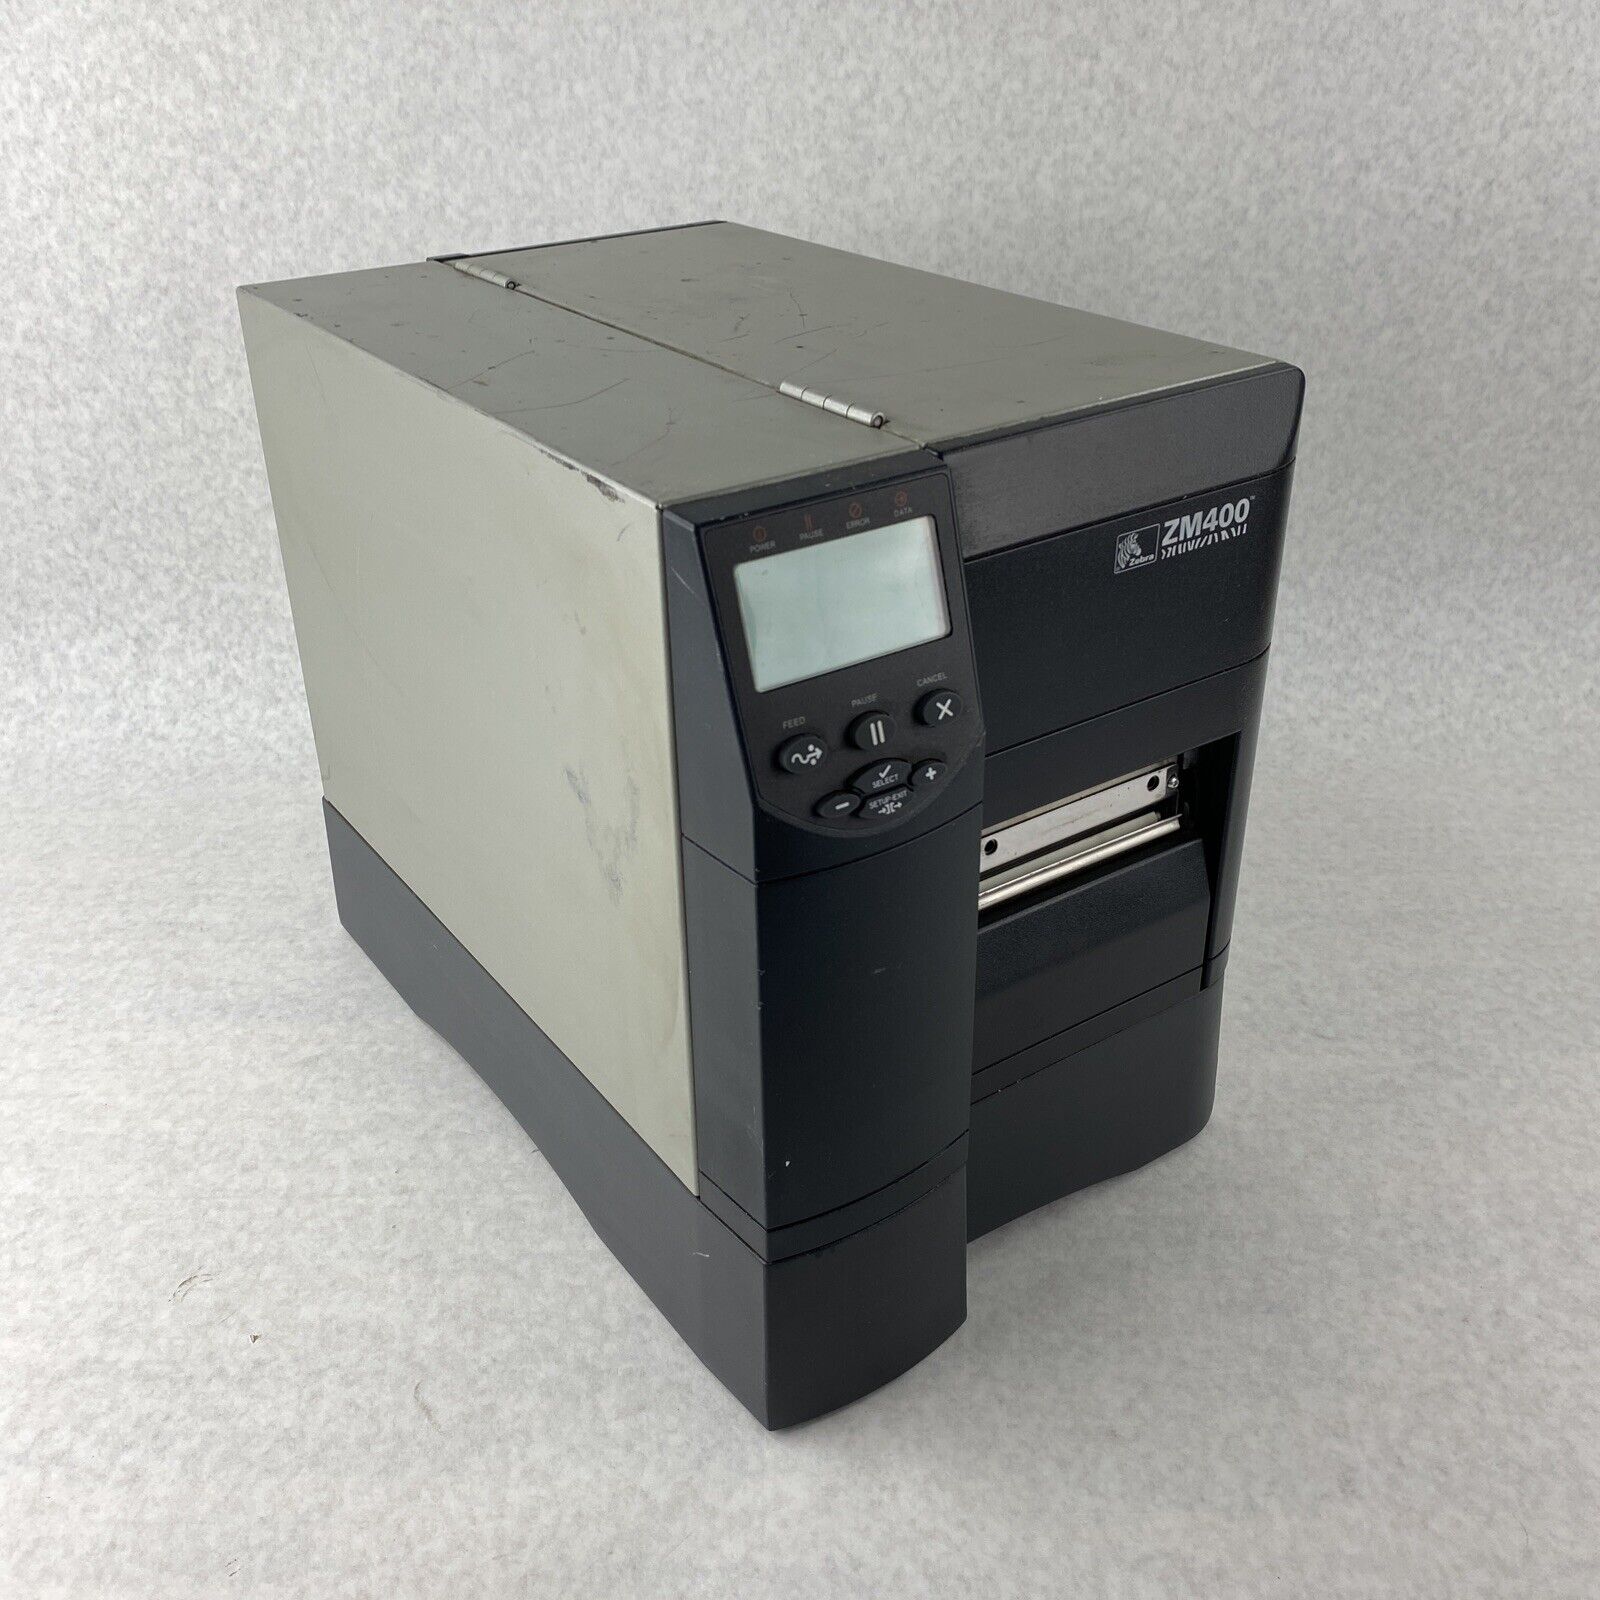 Zebra ZM400 Thermal Label Printer USB Serial Parallel Network ZM400-3001-0100T